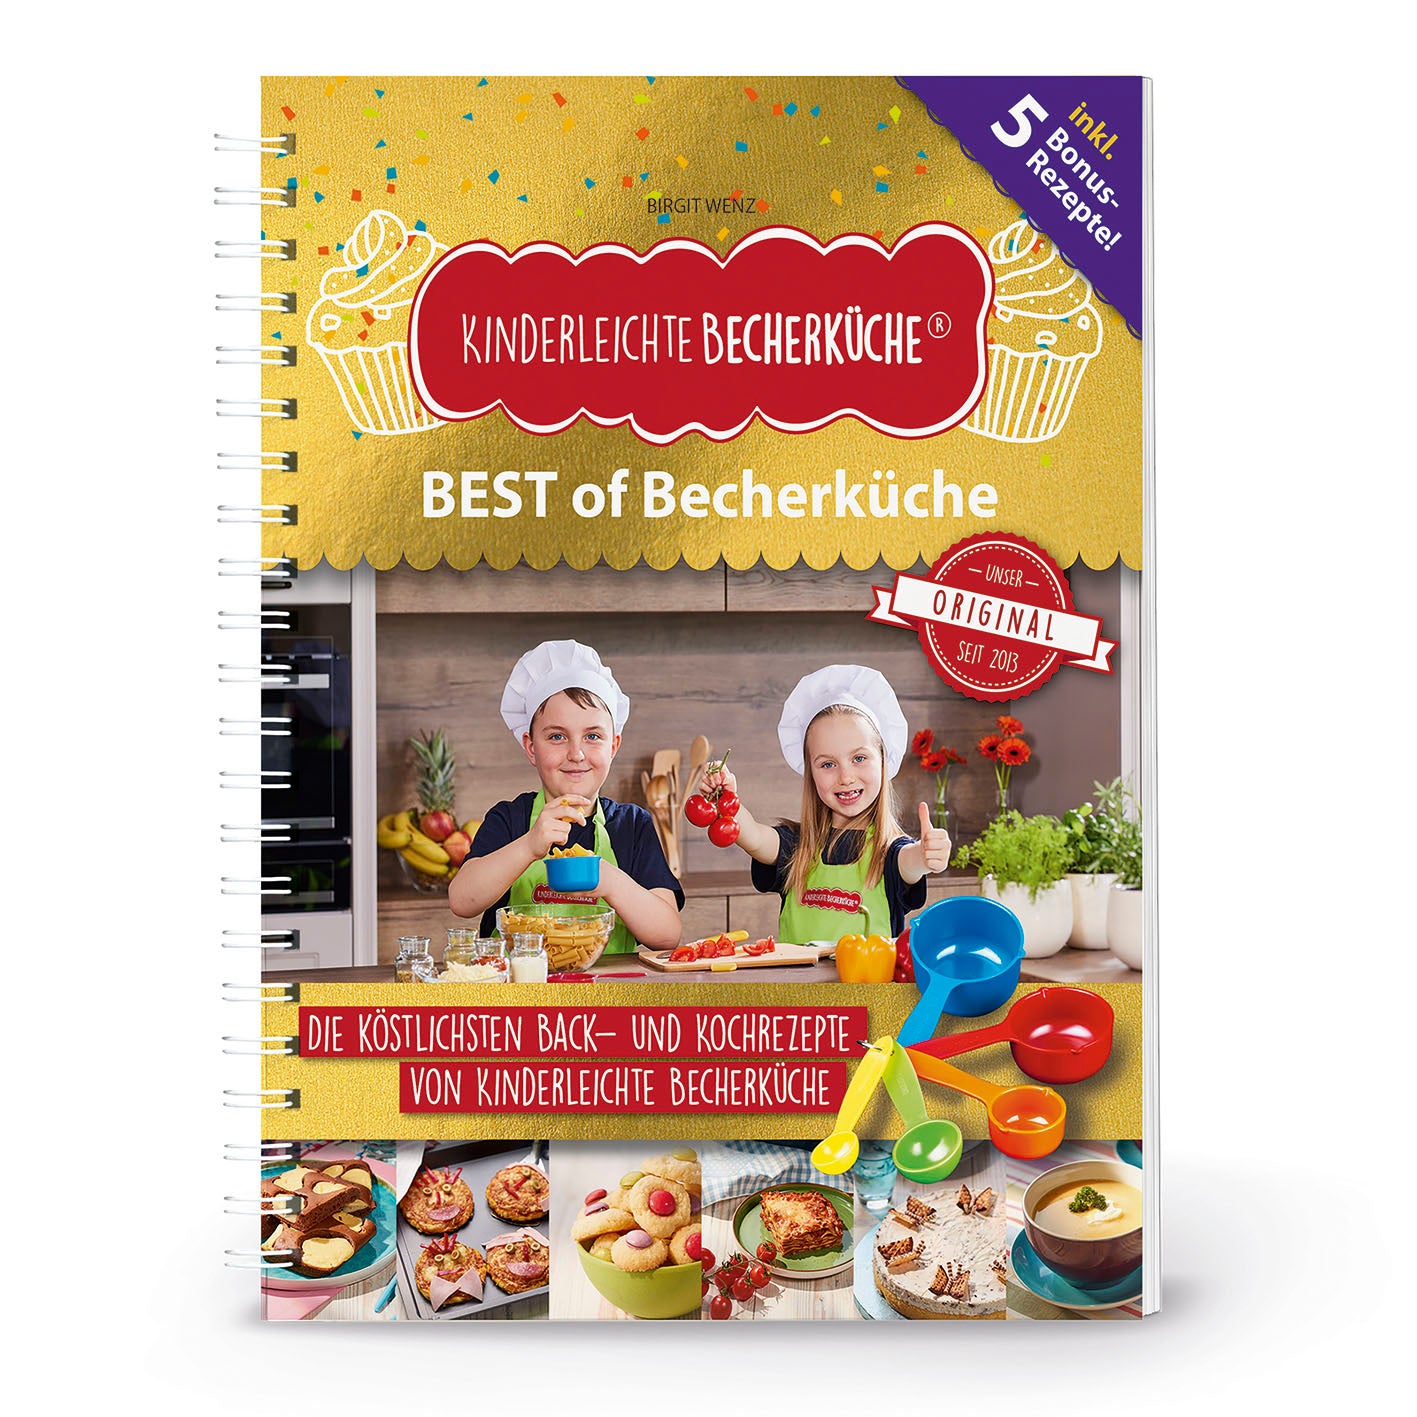 BEST of Becherküche (Back- und Kochbuch, 5 Messbecher, Keksdose)